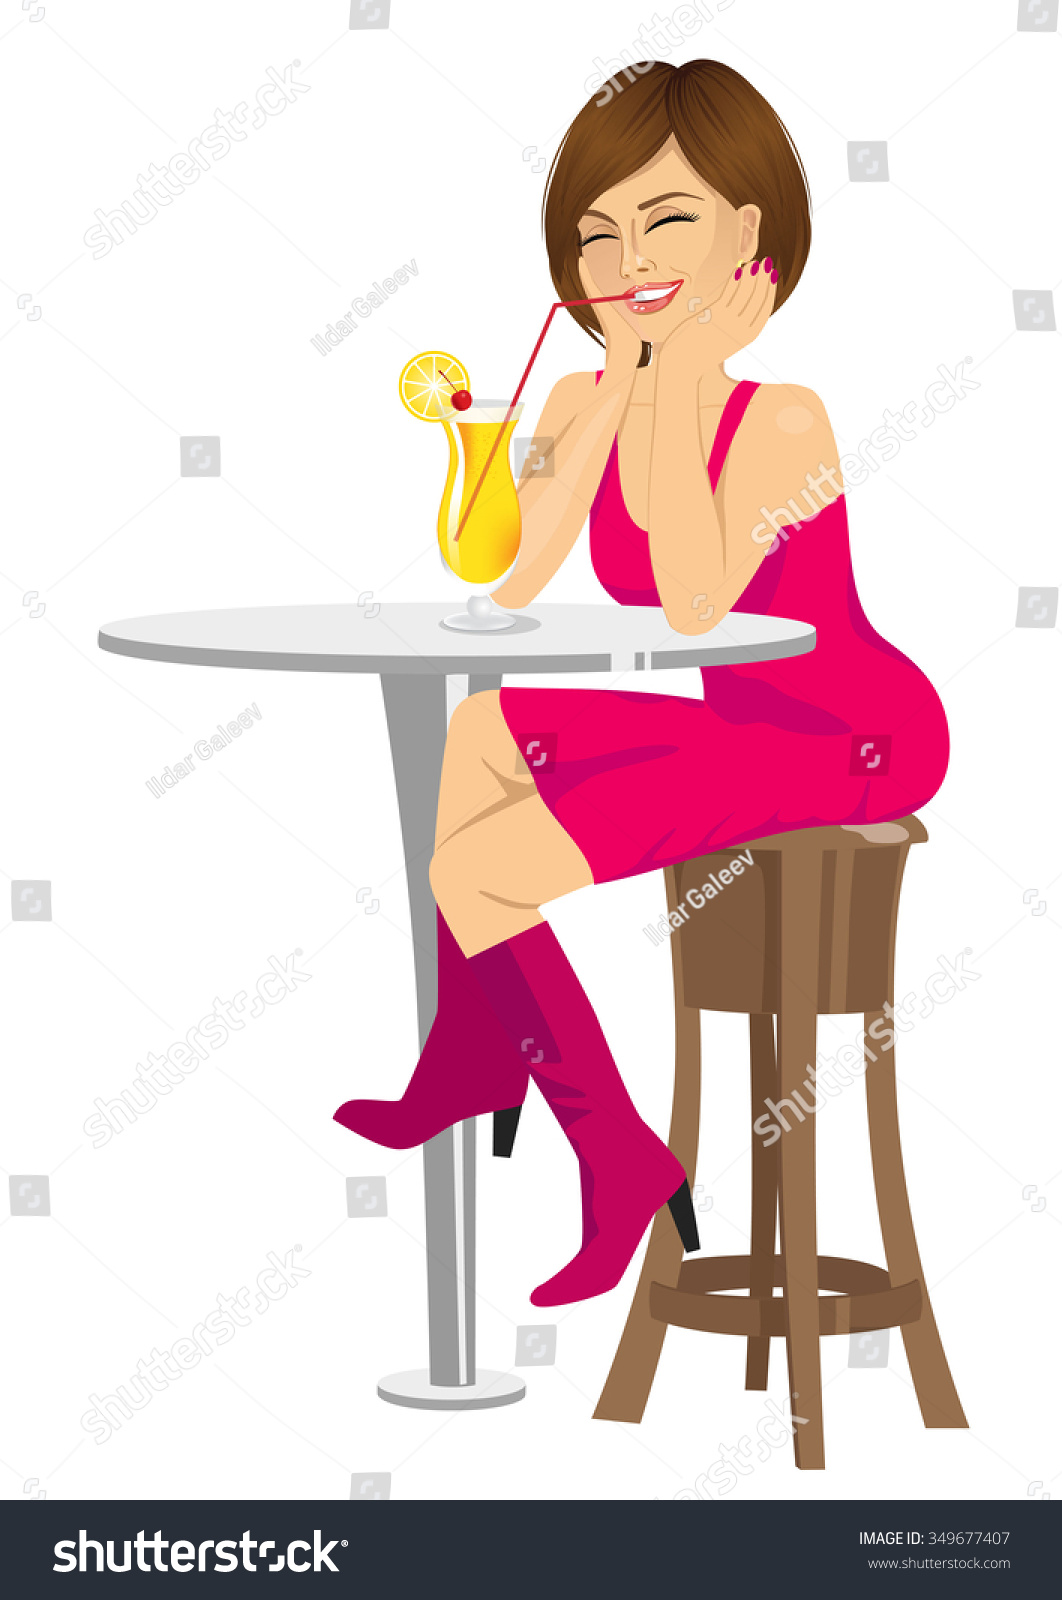 Portrait Pretty Woman Drinking Orange Juice Stock Vector Royalty Free 349677407 Shutterstock 